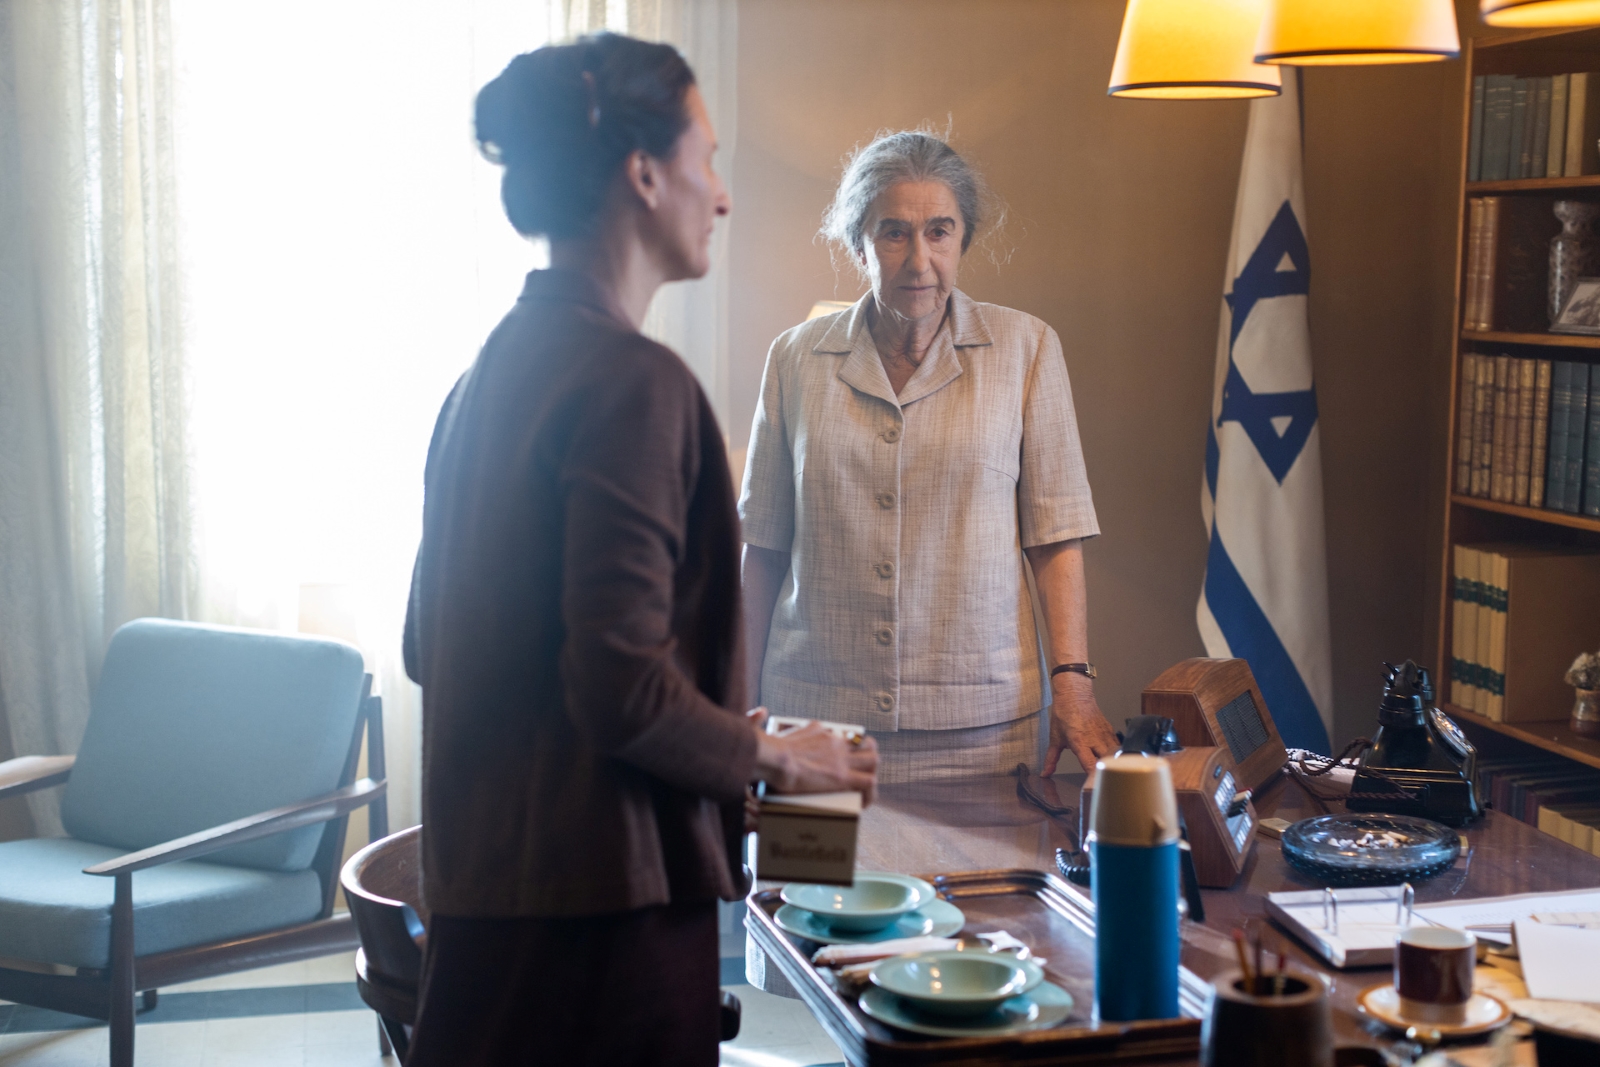 Kadr z filmu "Golda" - główna bohaterka stoi w gabinecie naprzeciwko innej kobiety. W tle flaga Izraela.